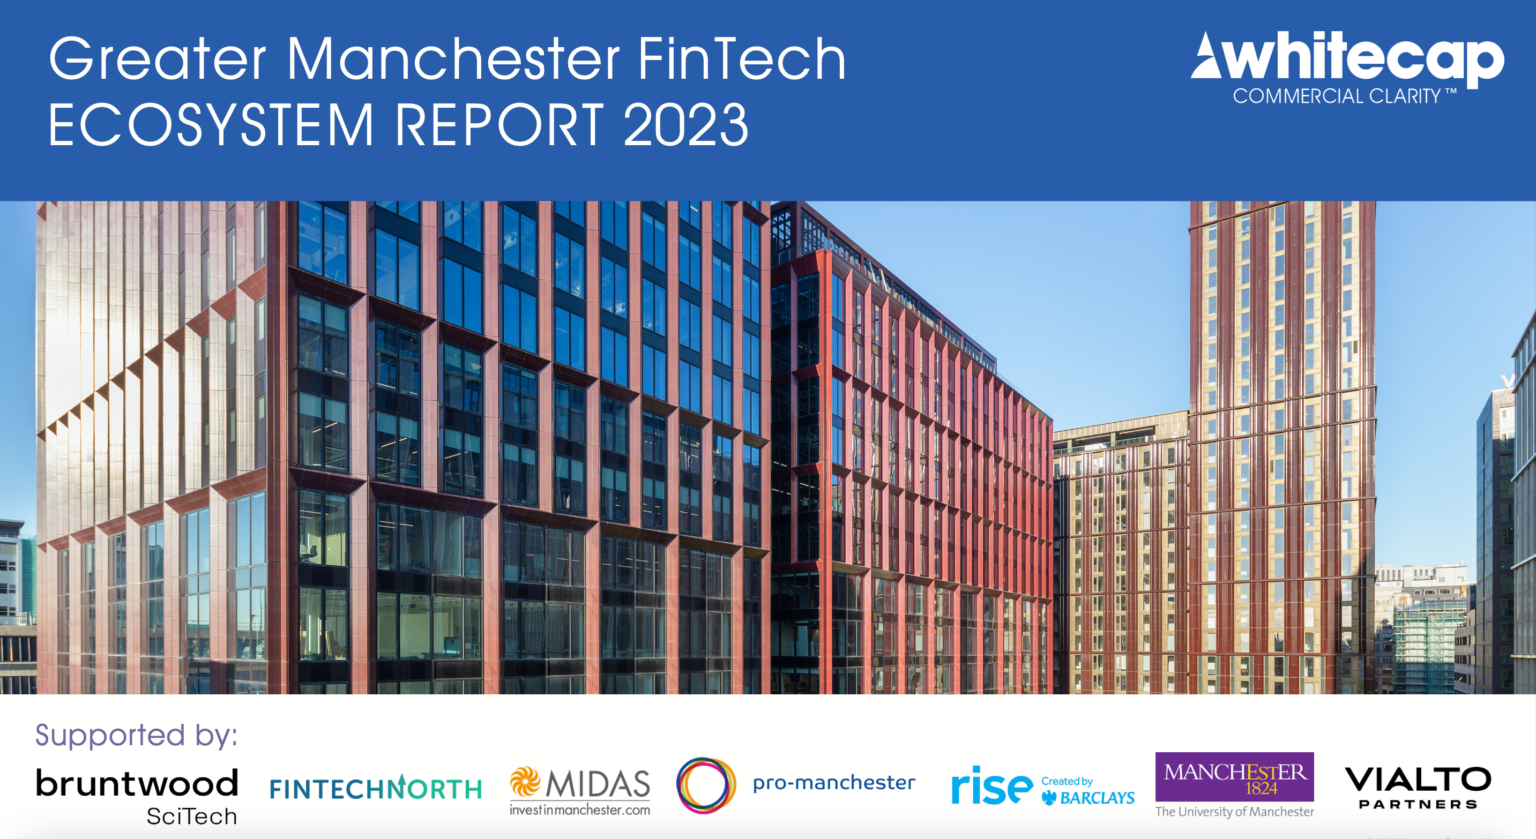 Greater Manchester FinTech sector approaches £1 billion